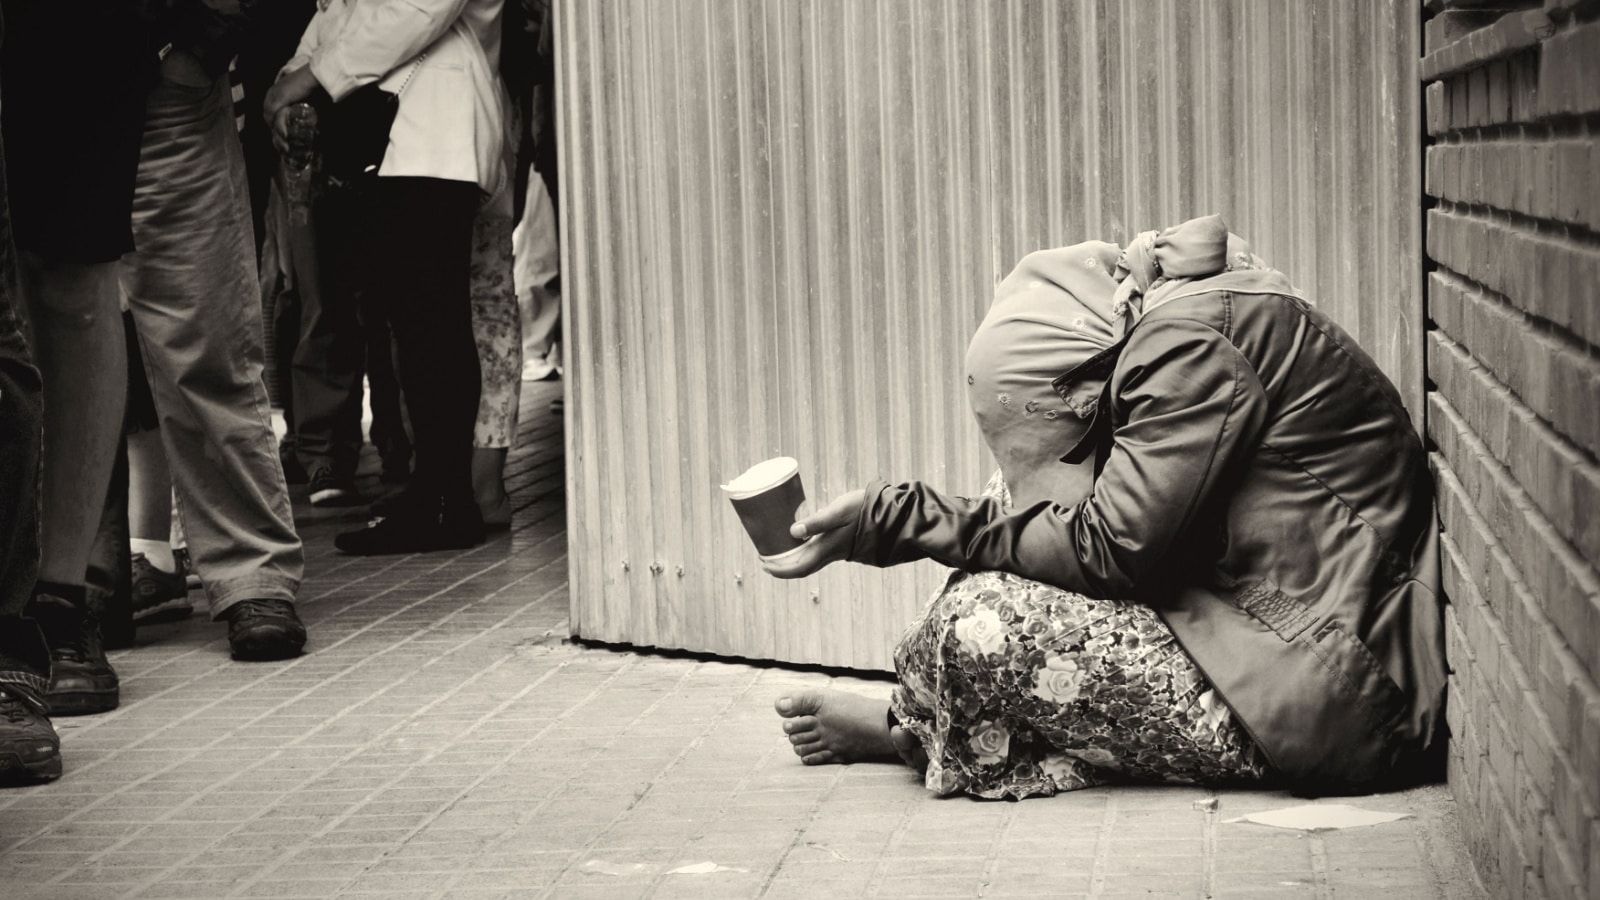 homeless girl is begging for money